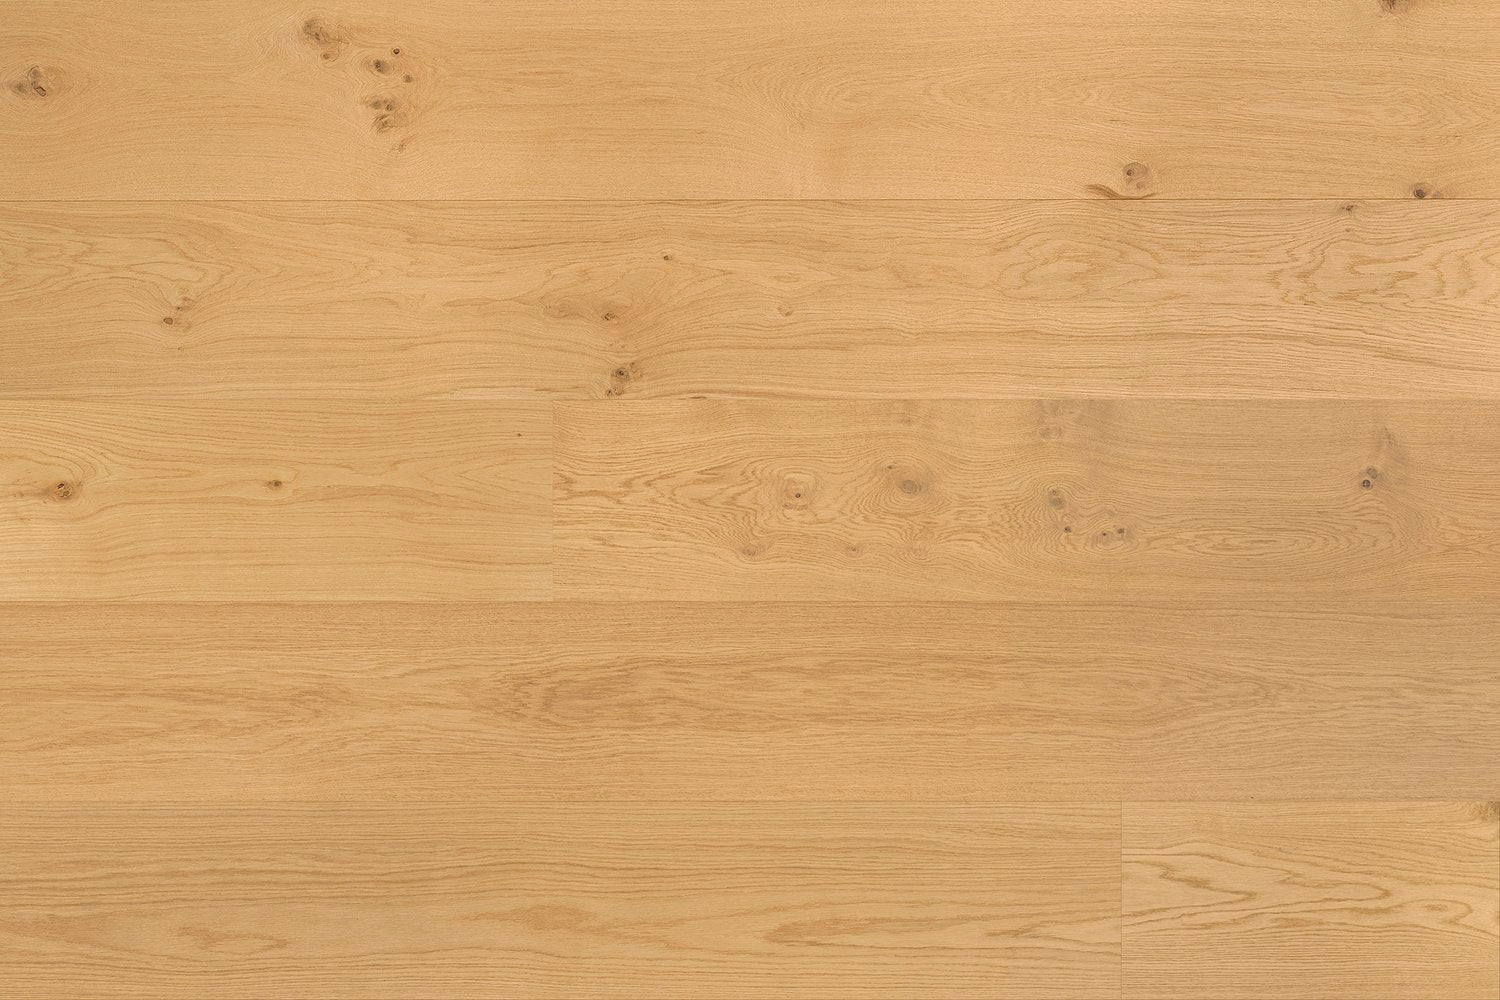 surface group artisan en bois villa del mar rimini white oak engineered hardwood flooring plank straight.jpg